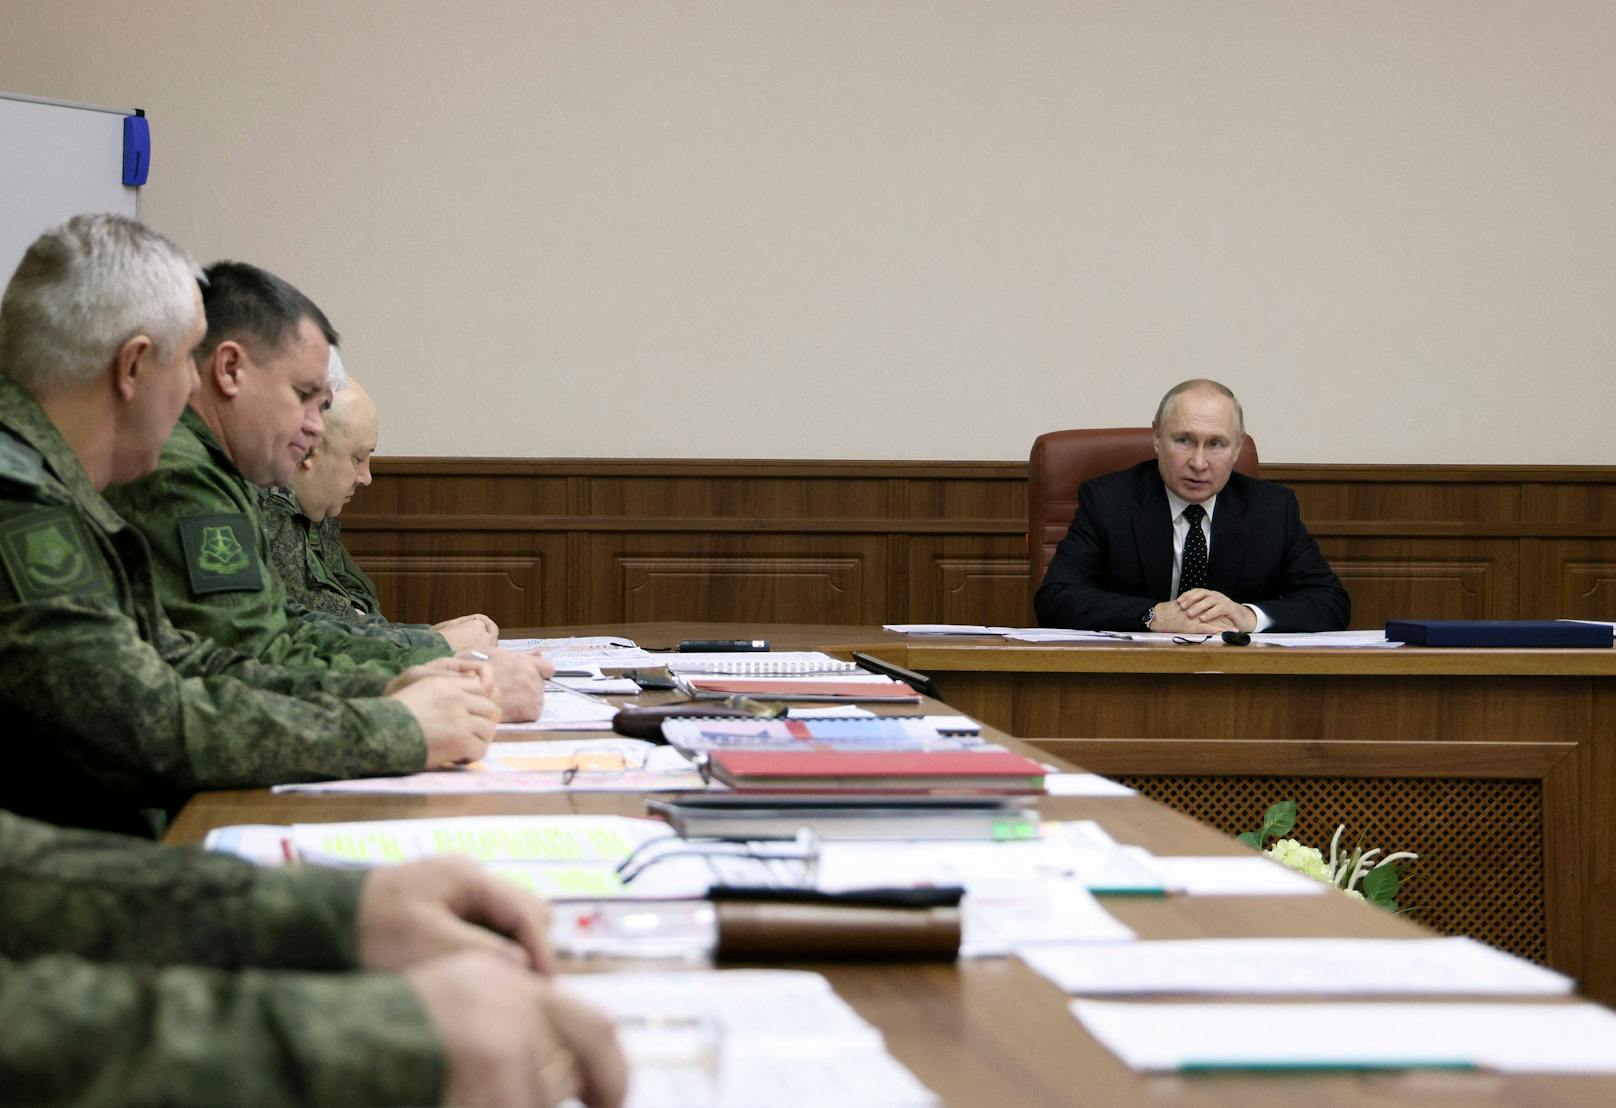 Am Samstag, 17. Dezember, besuchte Wladimir Putin die geheime Kommando-Zentrale seiner Ukraine-Invasion.